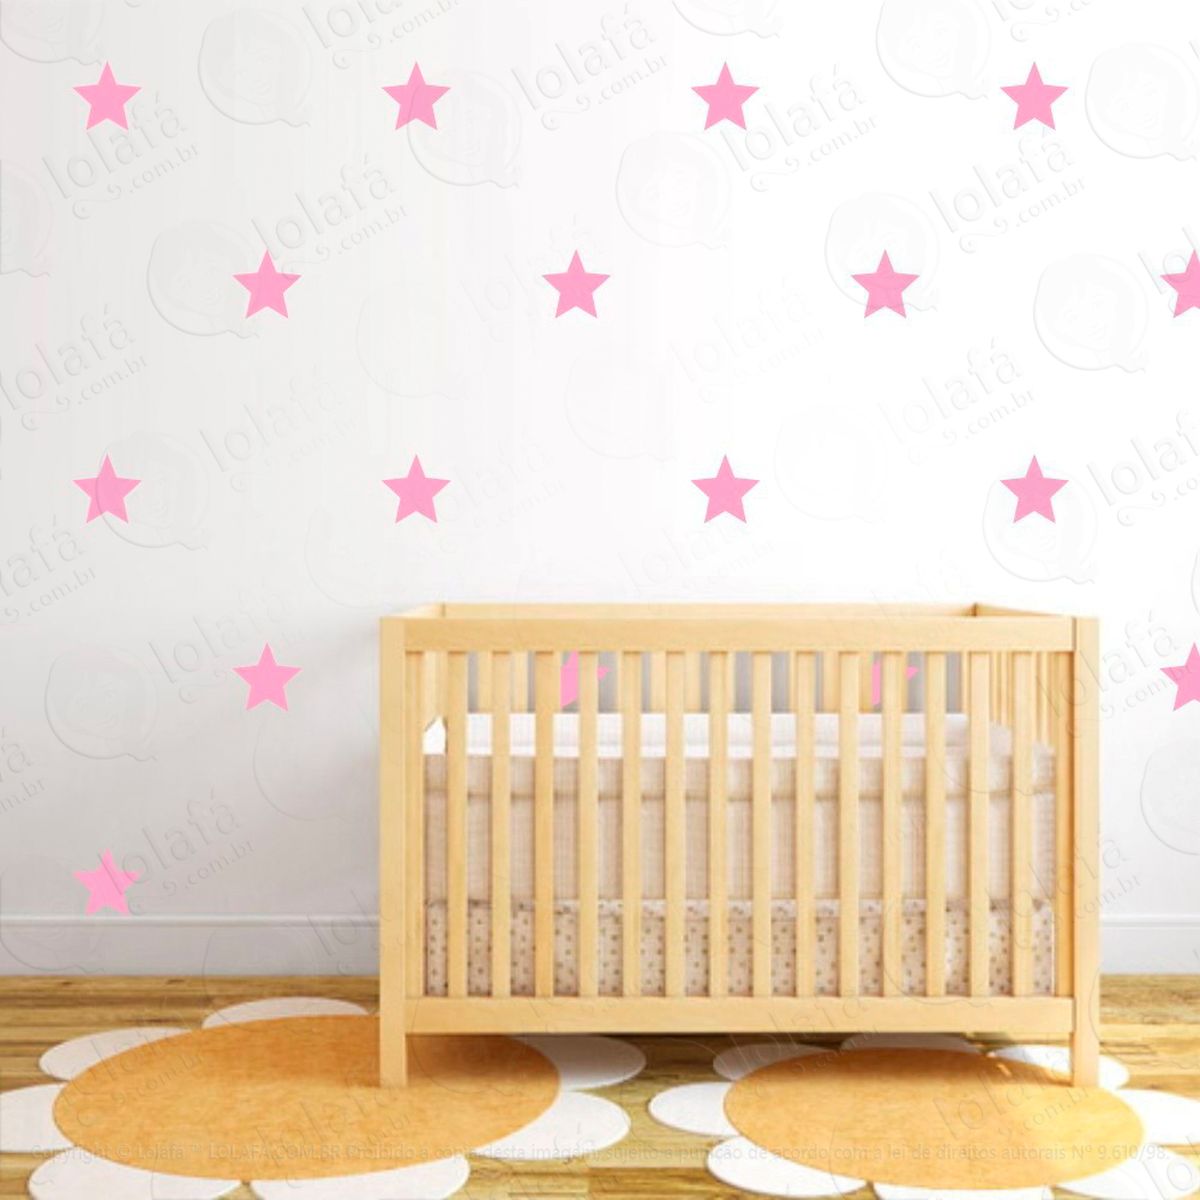 adesivos estrelas 24 peças adesivos para quarto de bebê infantil - mod:1028